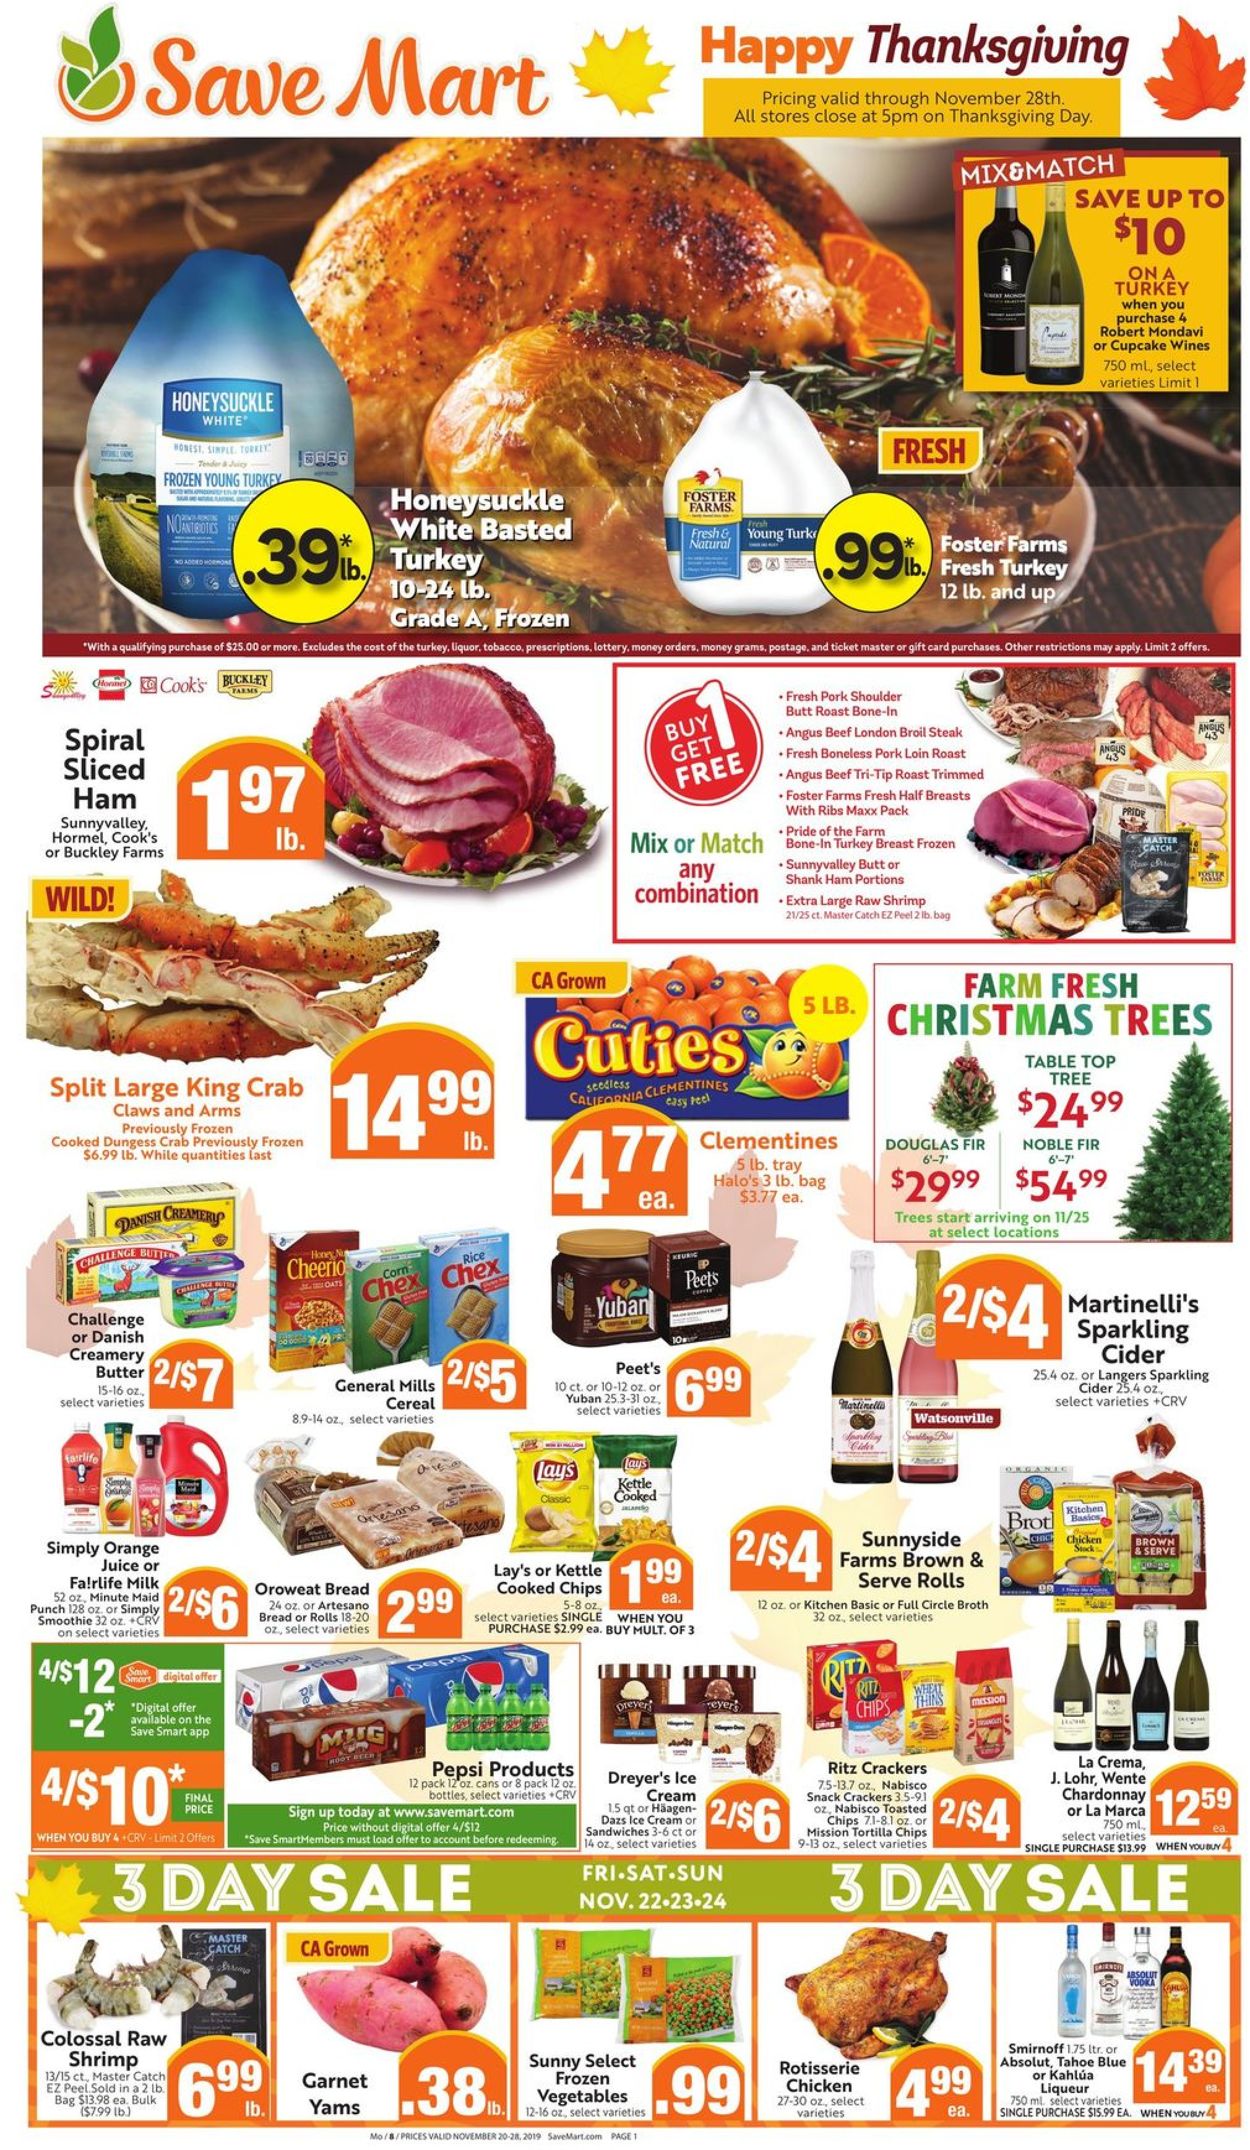 Save Mart - Thanksgiving Ad 2019 Weekly Ad Circular - valid 11/20-11/28/2019